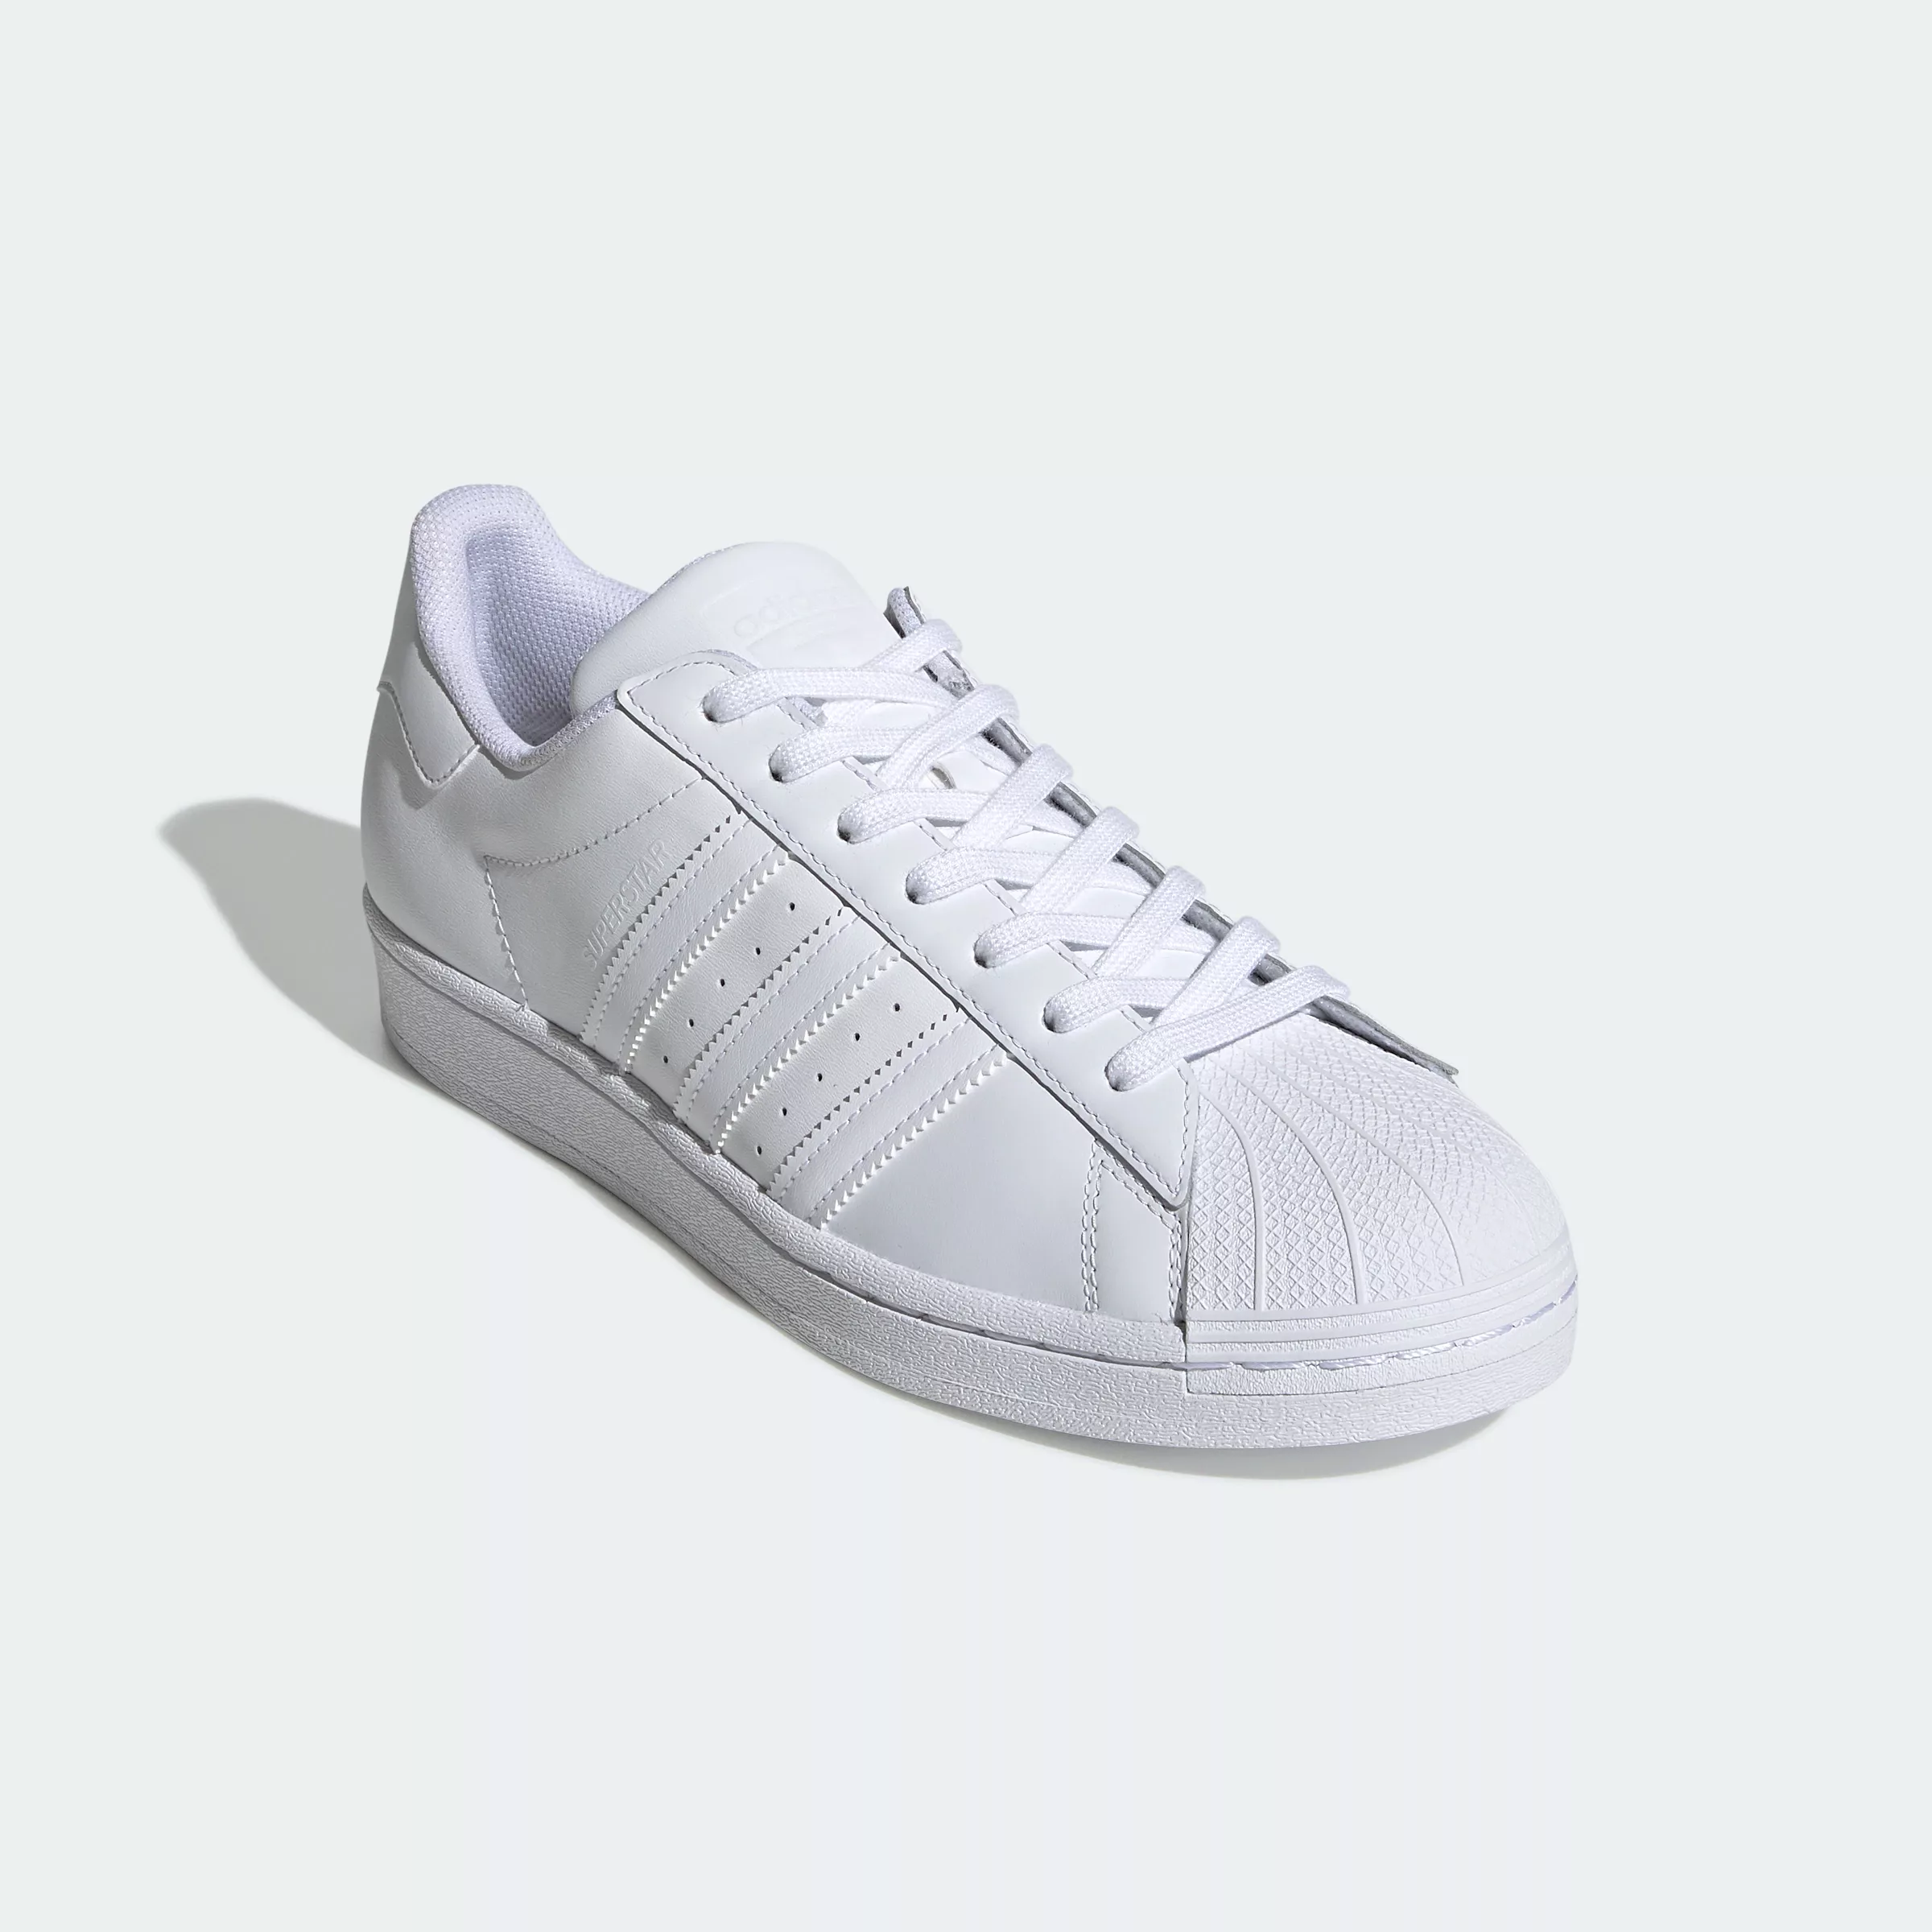 Adidas Originals Superstar Sportschuhe EU 40 2/3 Ftwr White / Ftwr White / günstig online kaufen